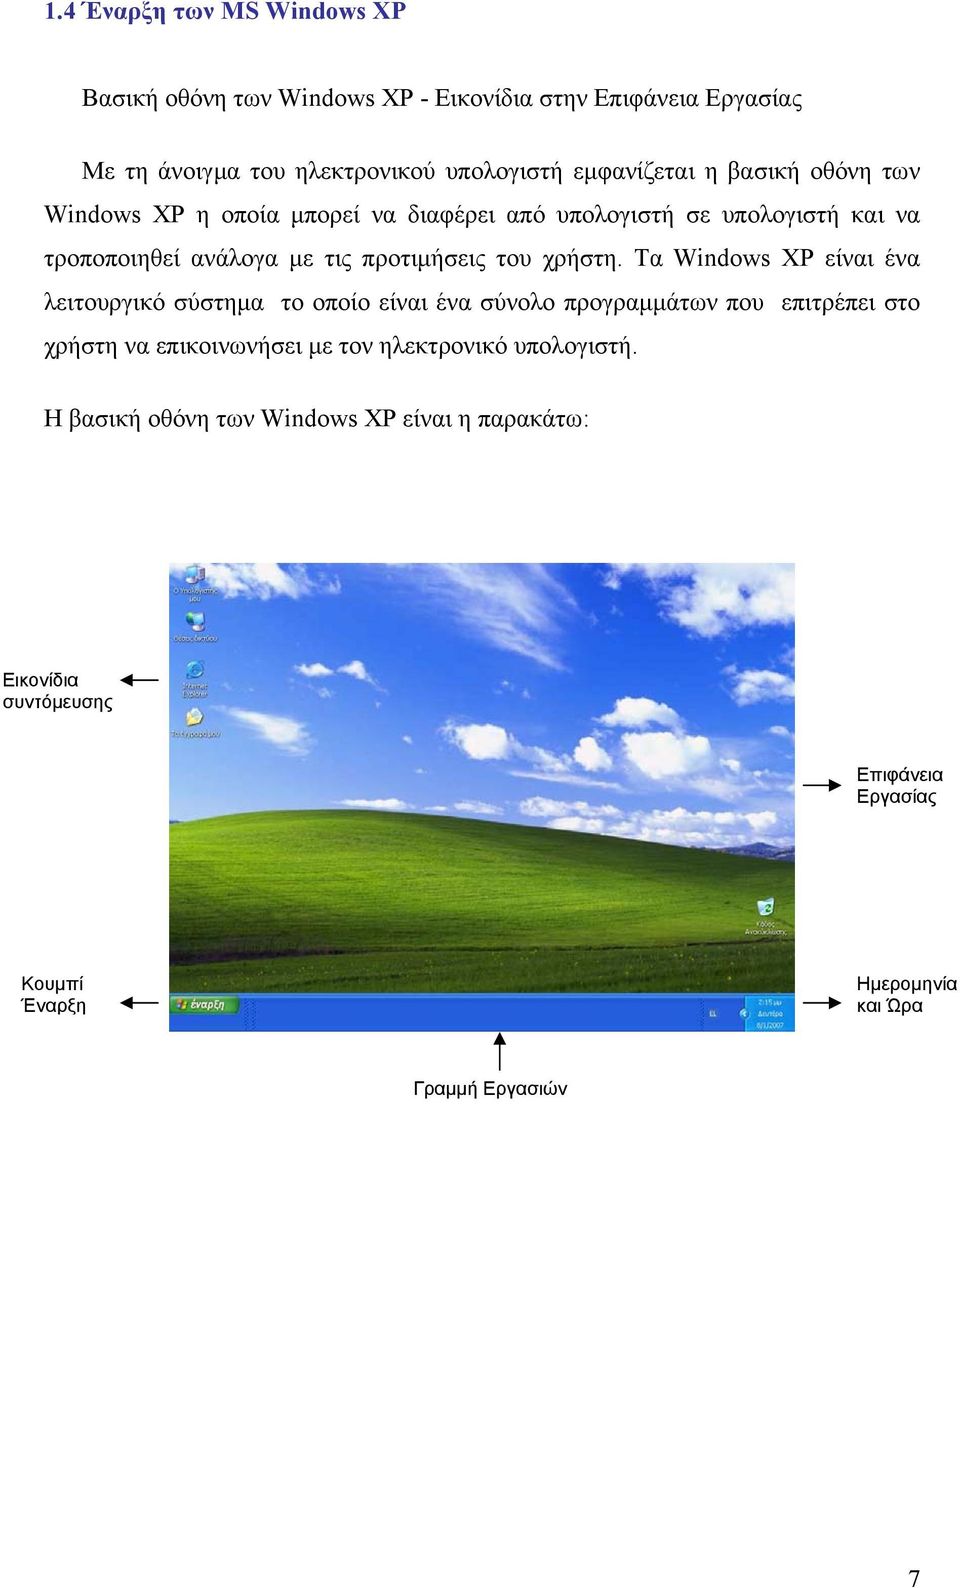 Τα Windows XP είναι ένα λειτουργικό σύστηµα το οποίο είναι ένα σύνολο προγραµµάτων που επιτρέπει στο χρήστη να επικοινωνήσει µε τον ηλεκτρονικό